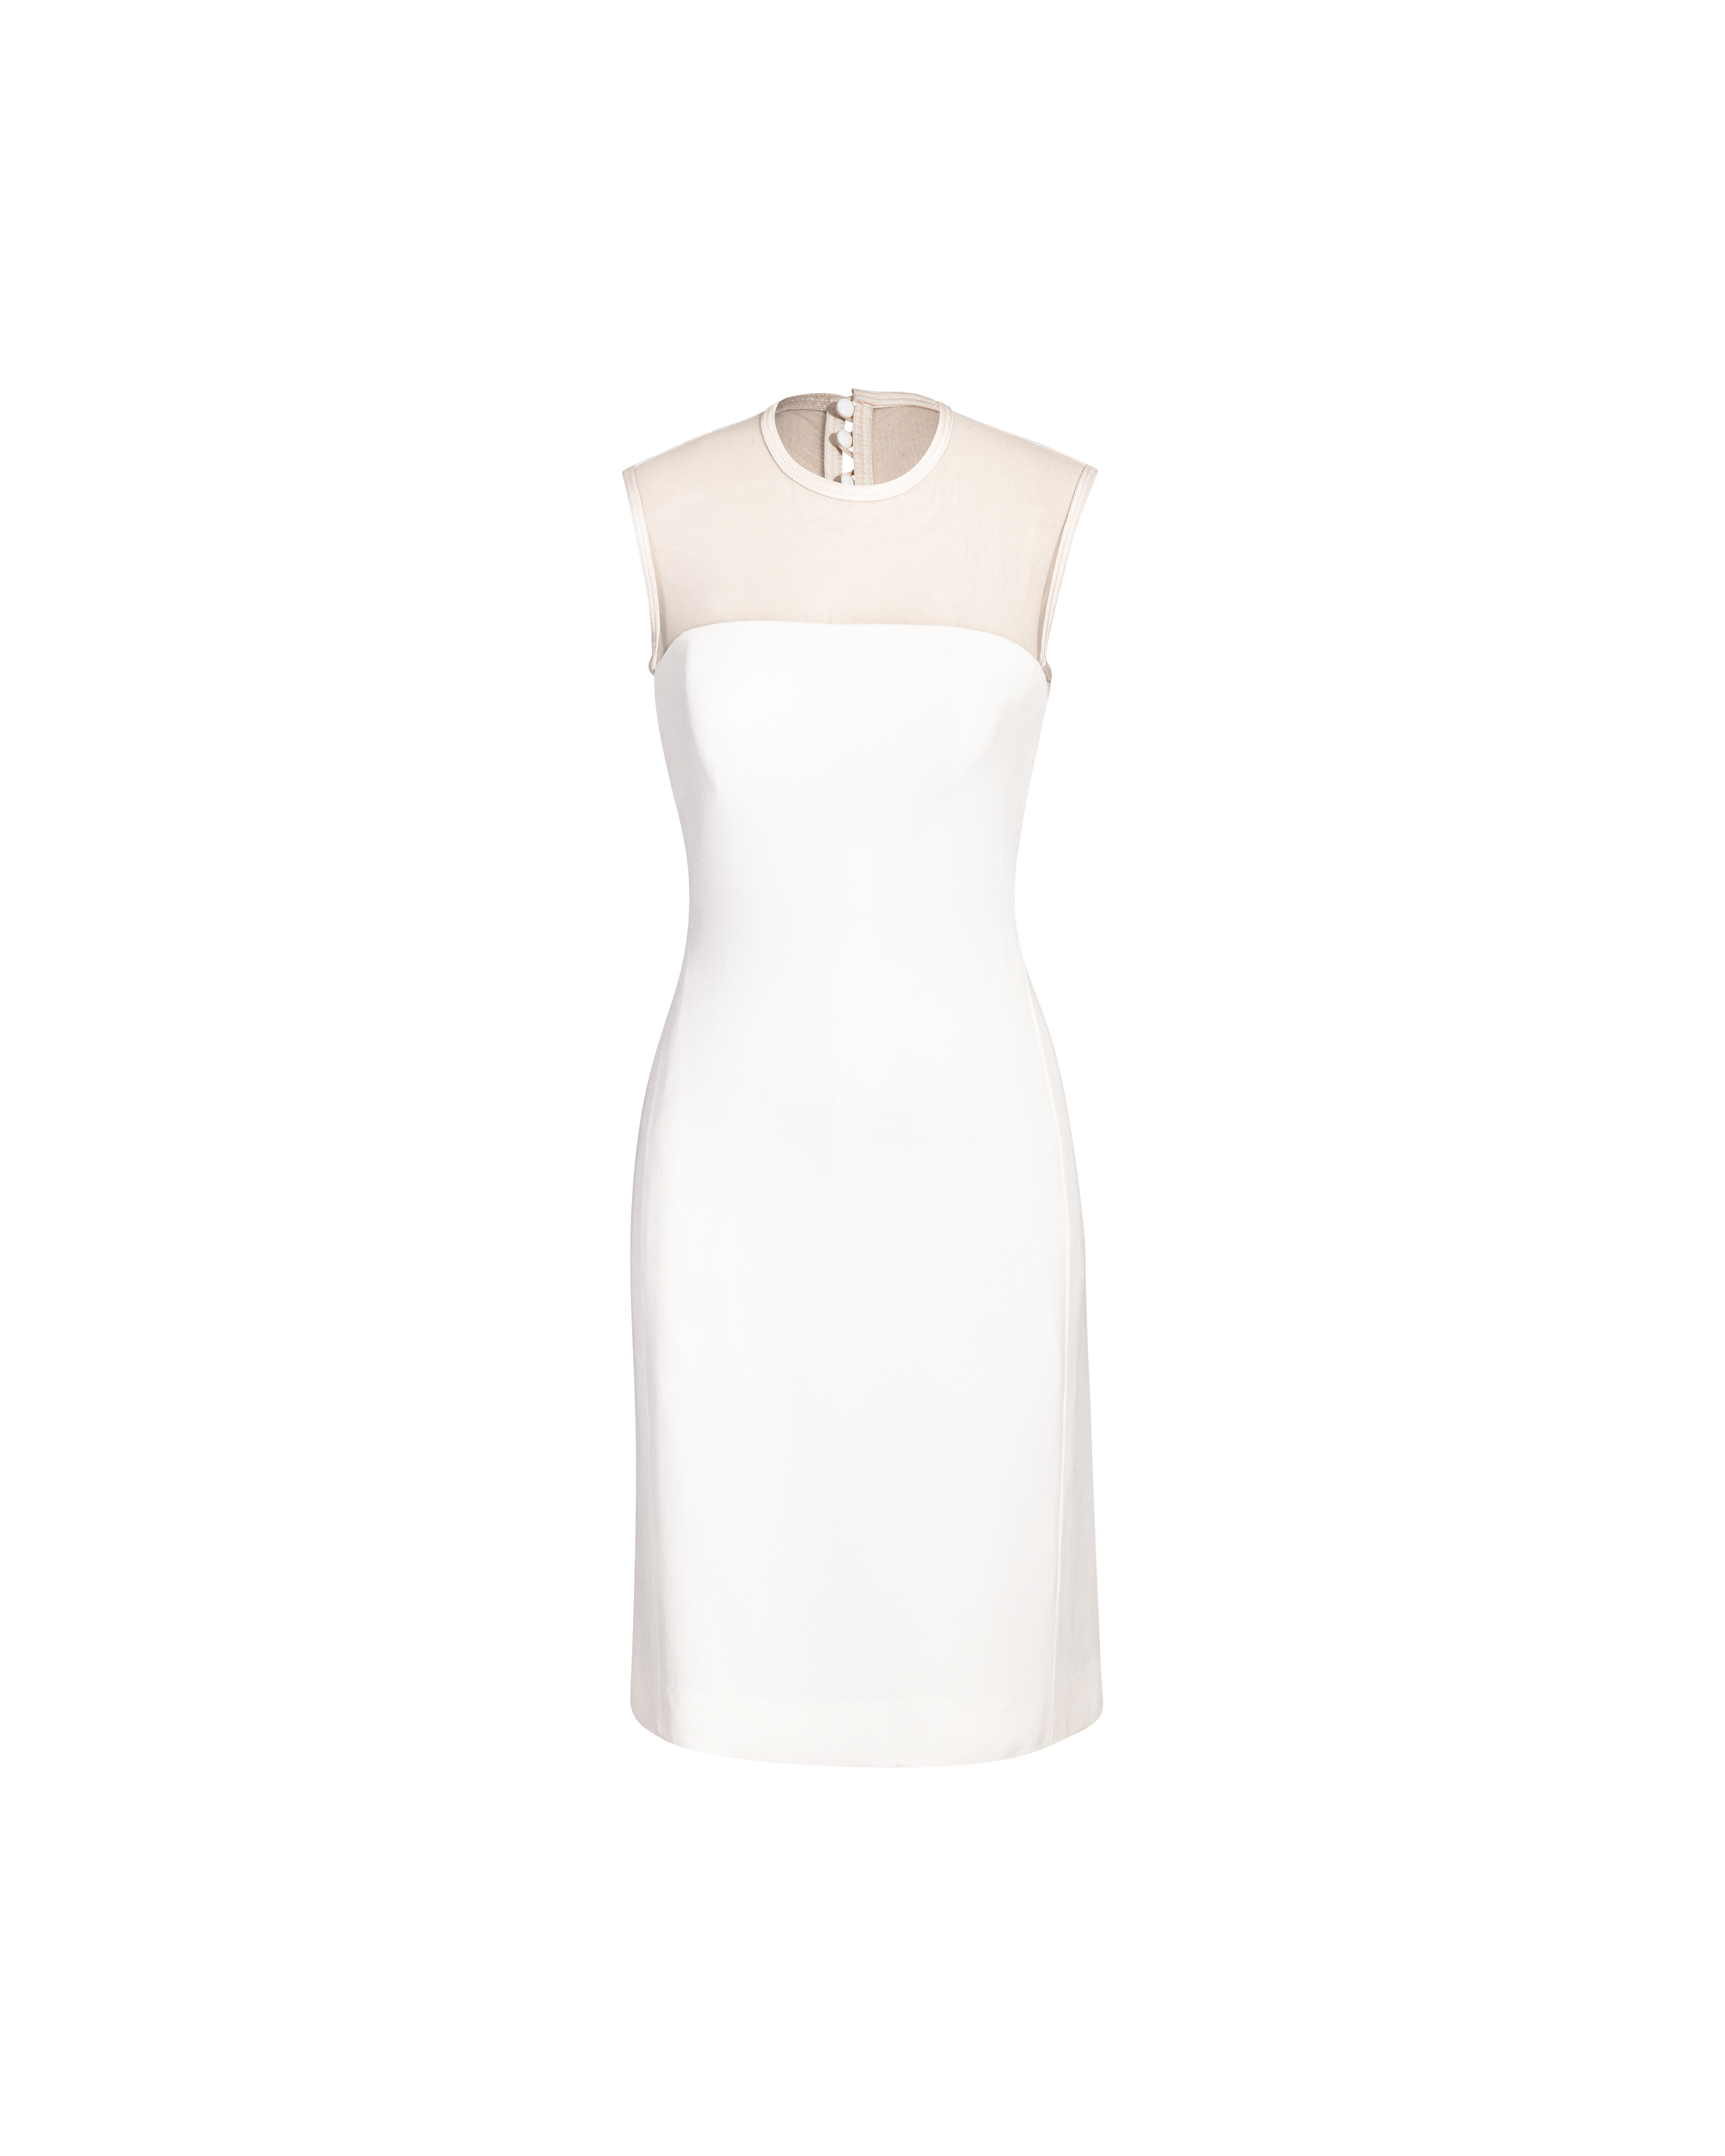 S/S 1996 White Mesh Mini Dress